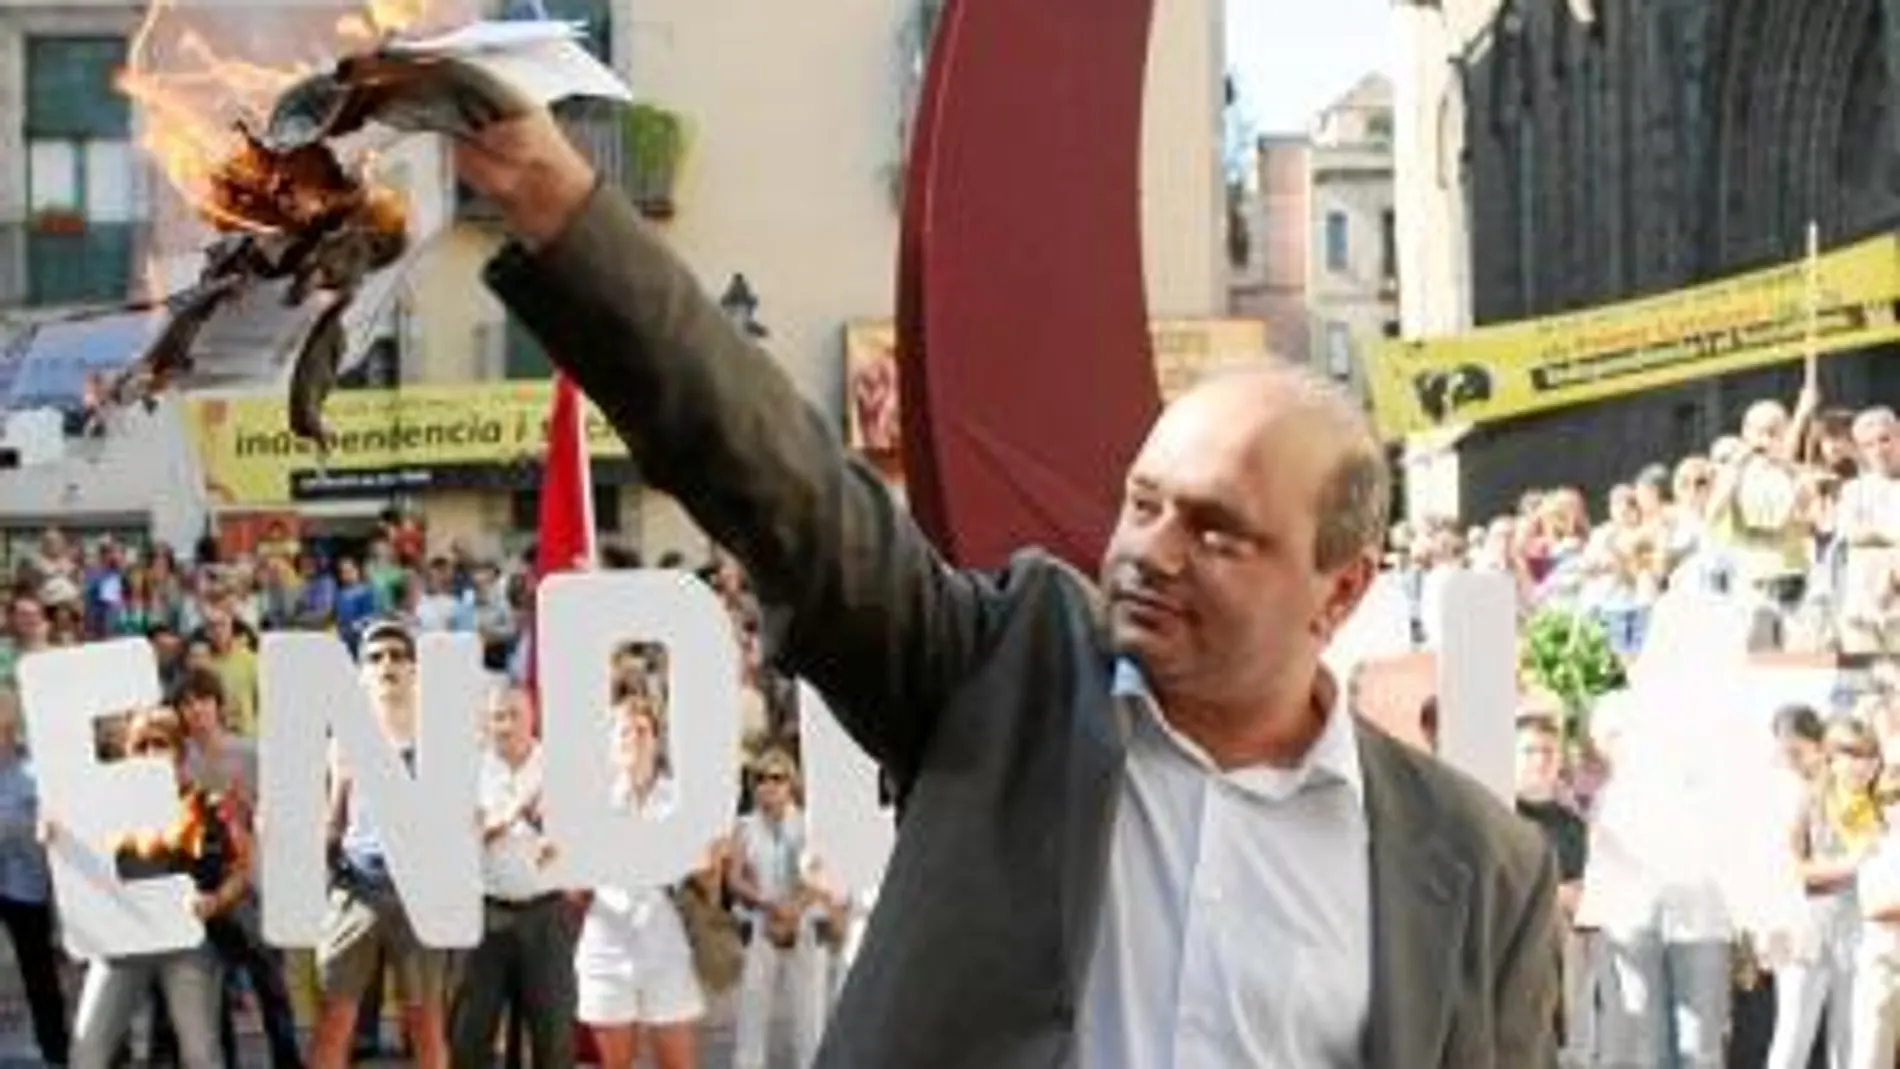 La Diada acaba con un «Adiós España» mientras los radicales queman una foto del Rey